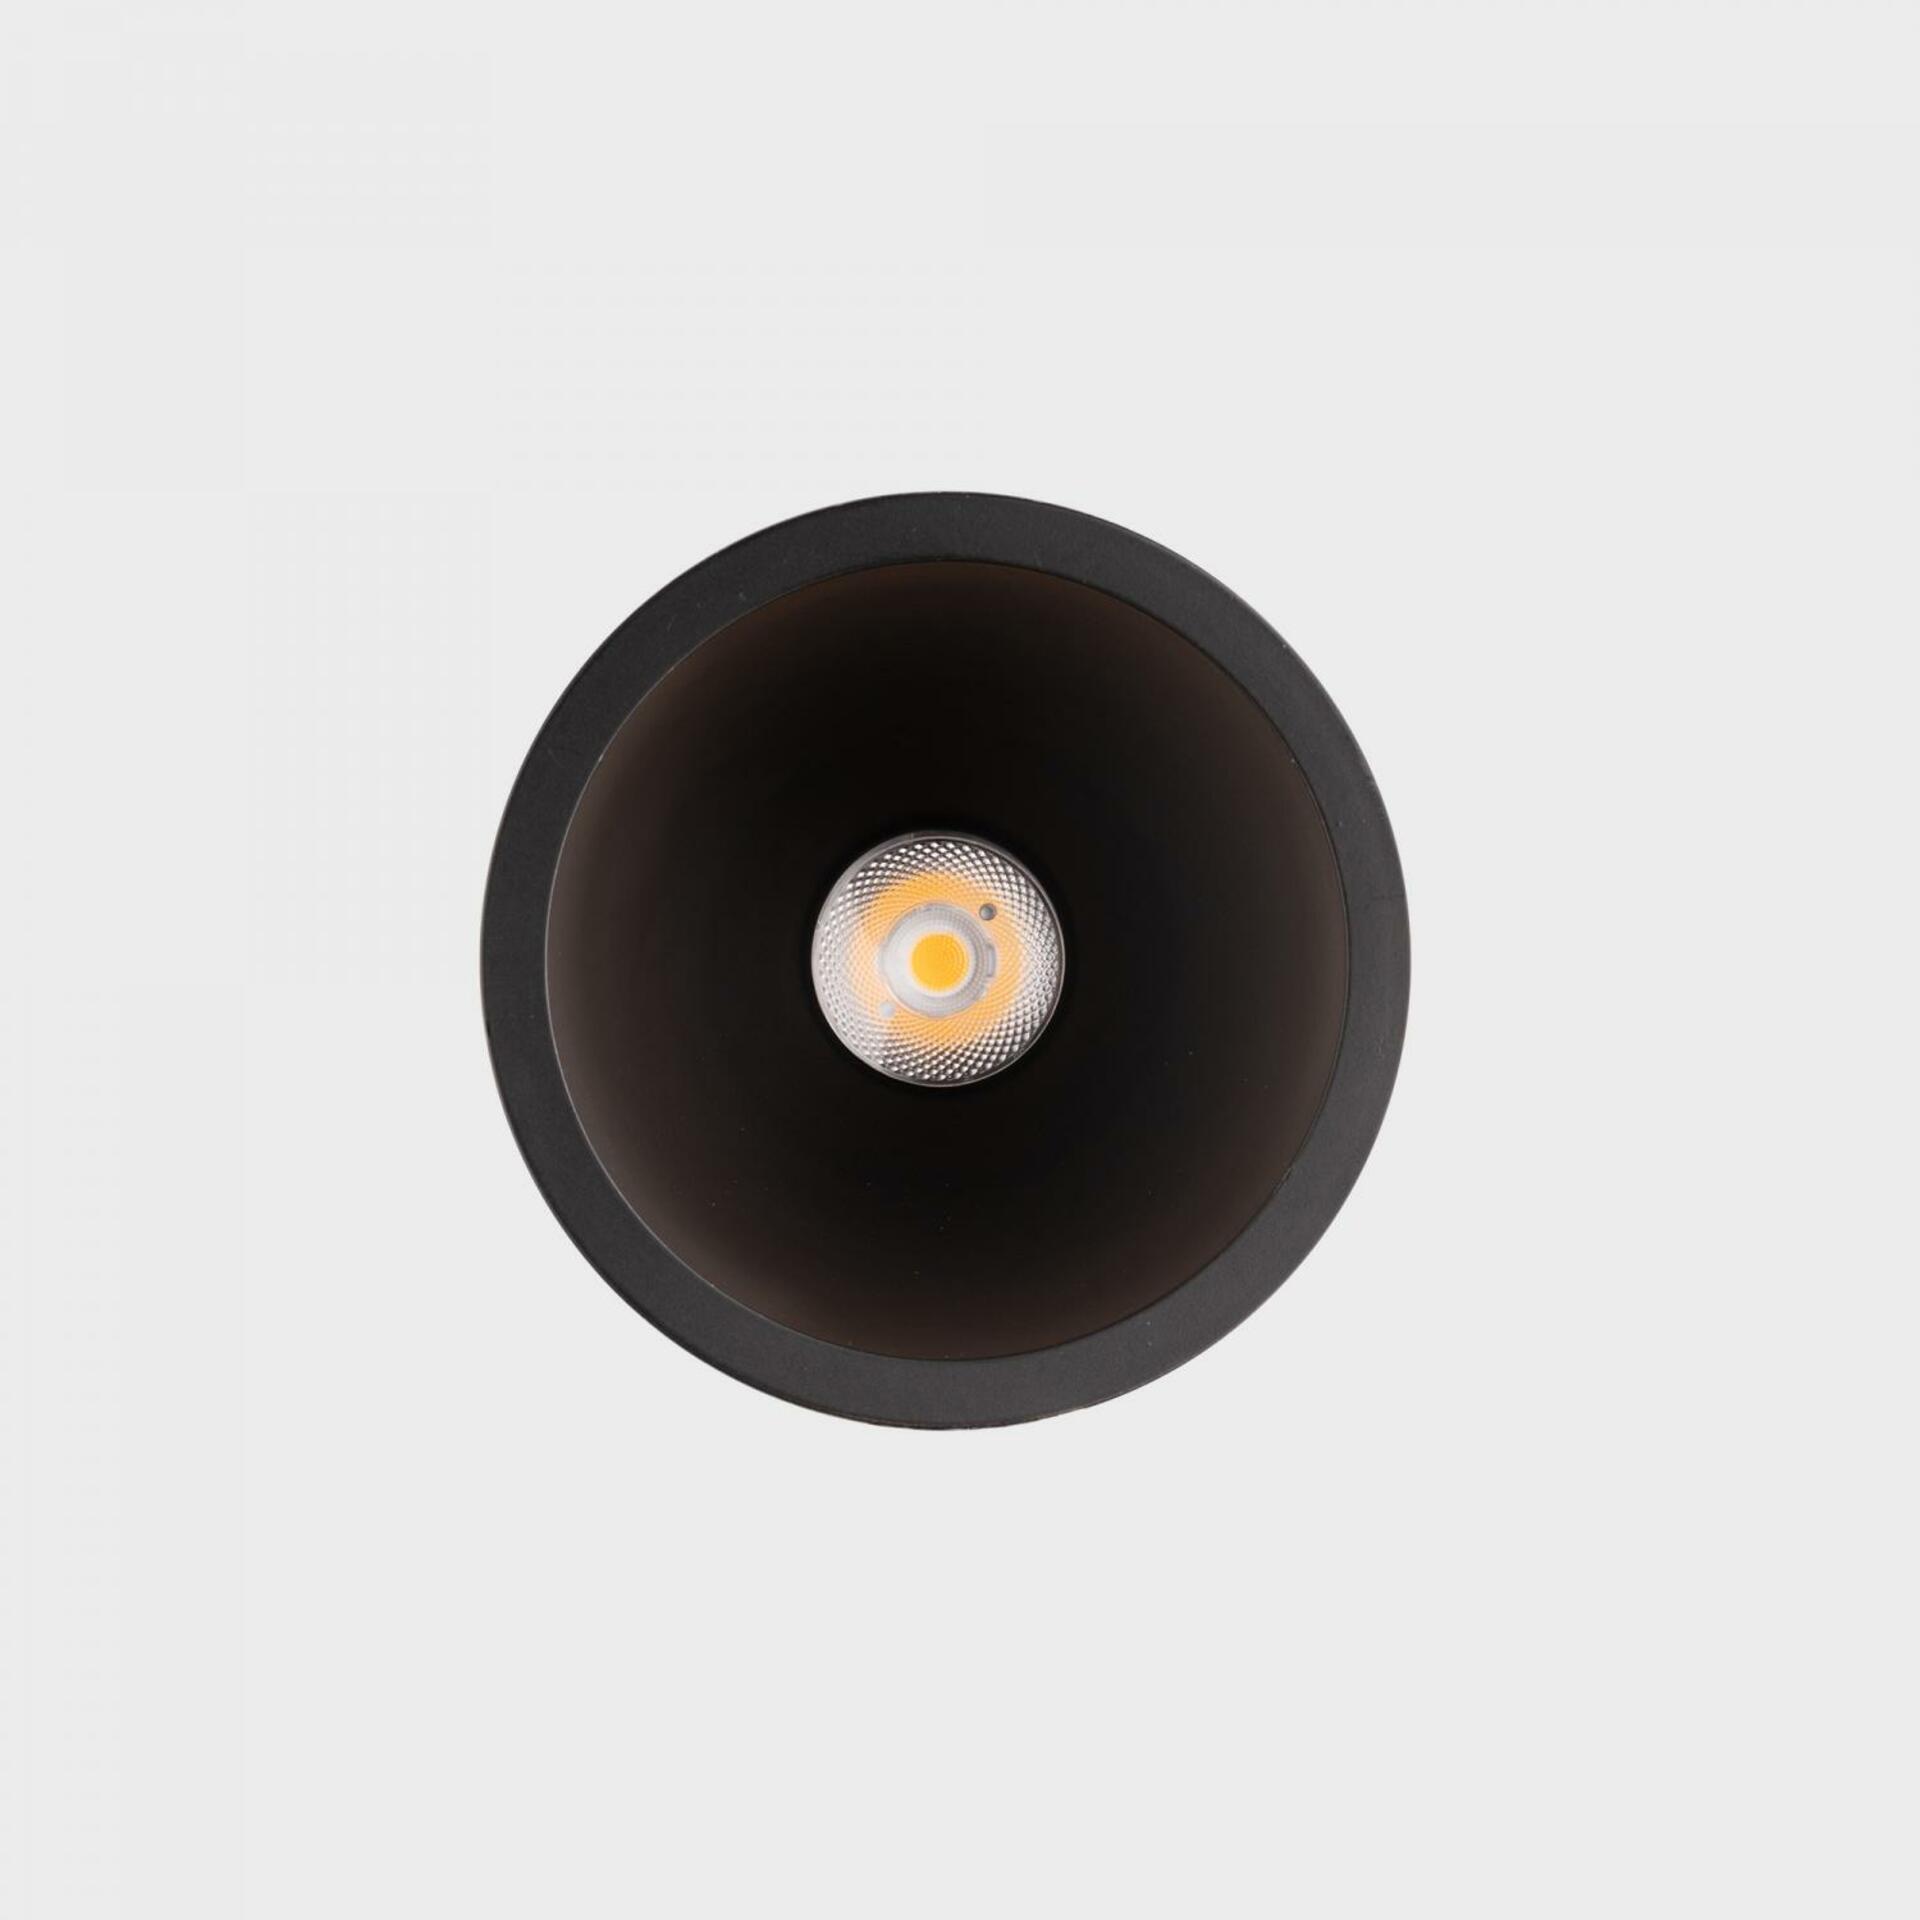 KOHL LIGHTING KOHL-Lighting NOON zapuštěné svítidlo s rámečkem pr.83 mm černá 38° 7 W  CRI 80 4000K 1.10V